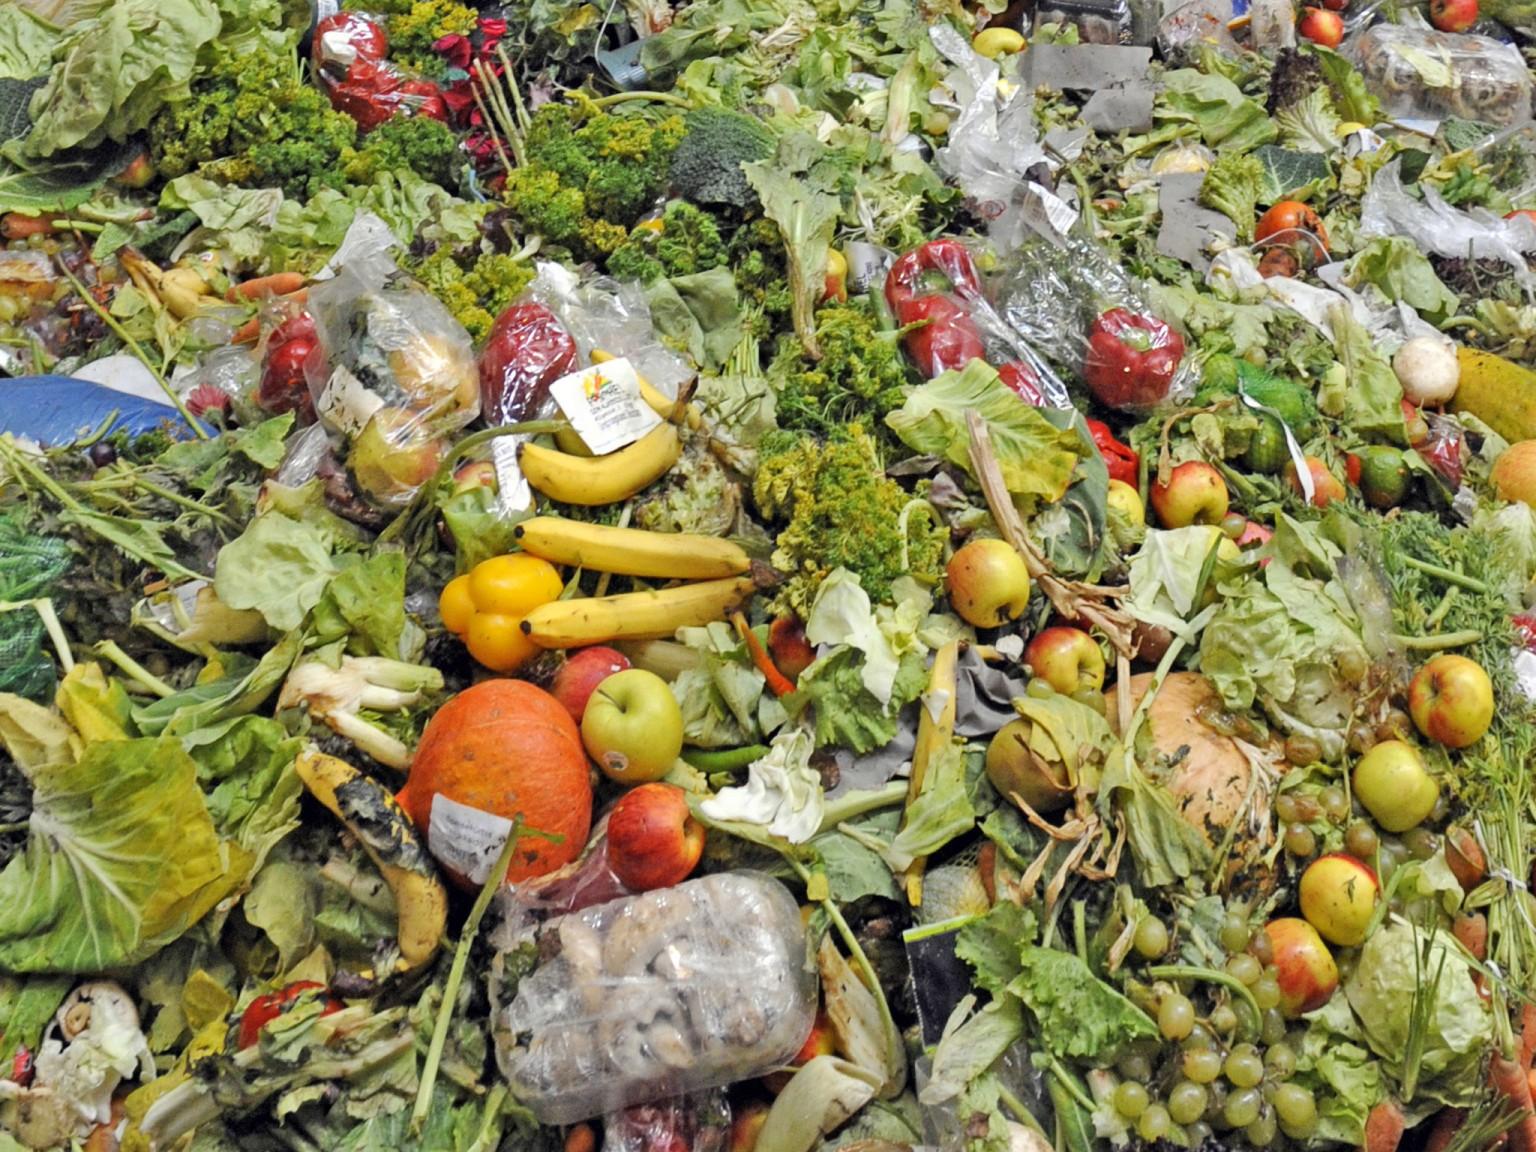 全球每年浪费一万亿美元食物:欧美占60%,翻垃圾游遍欧美!